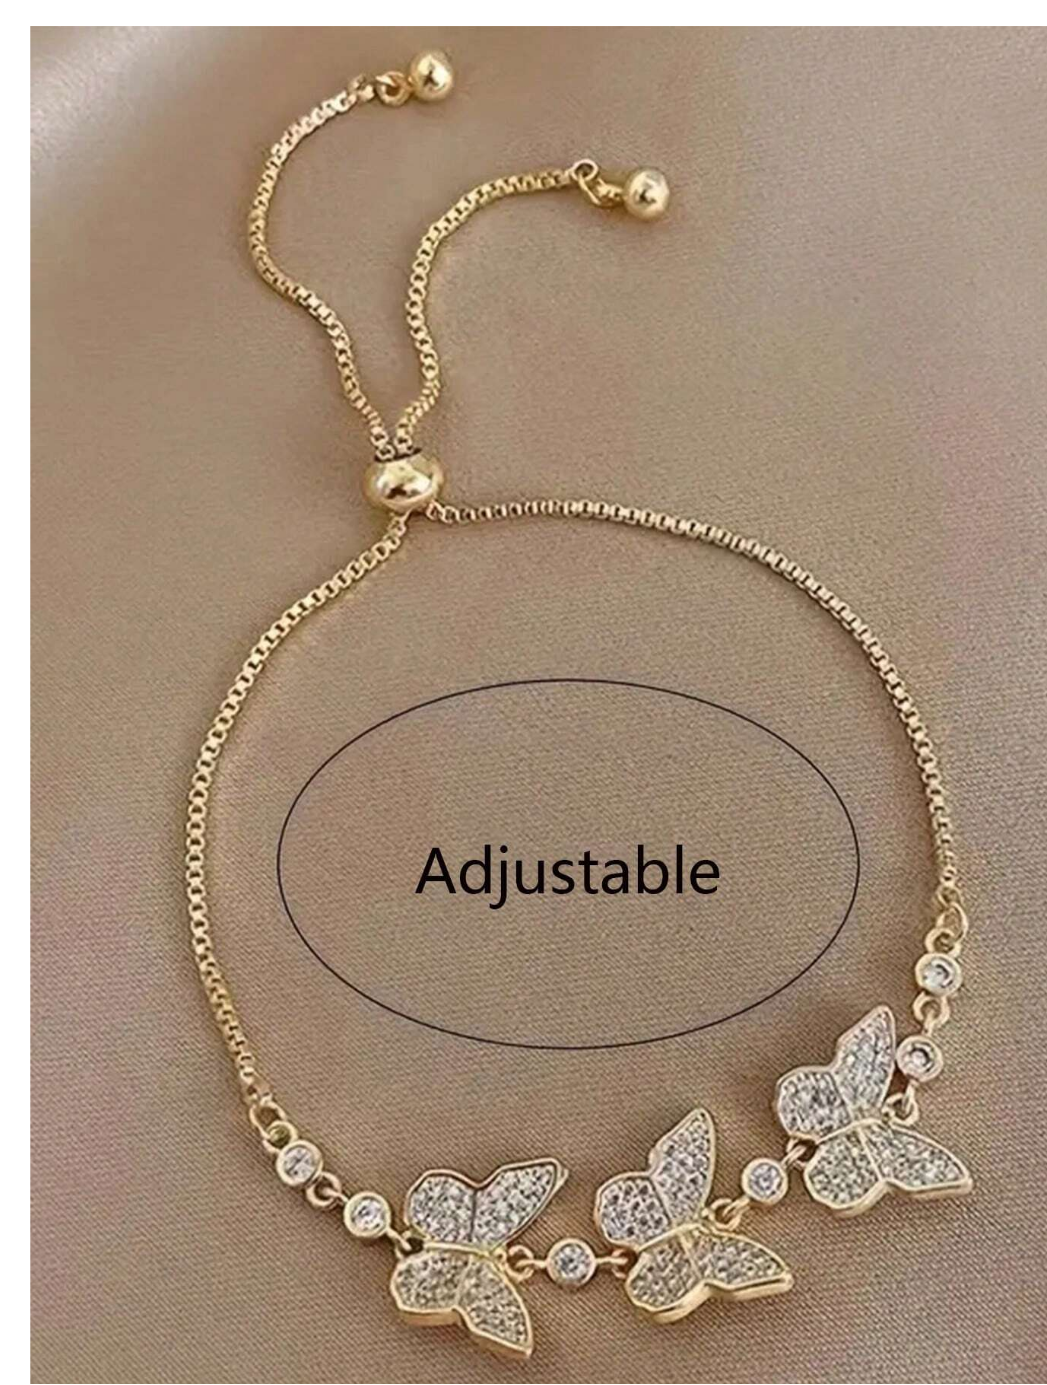 Sparkling Elegance: Single Piece Cubic Zirconia Adjustable Bracelet for Effortless Glamour!